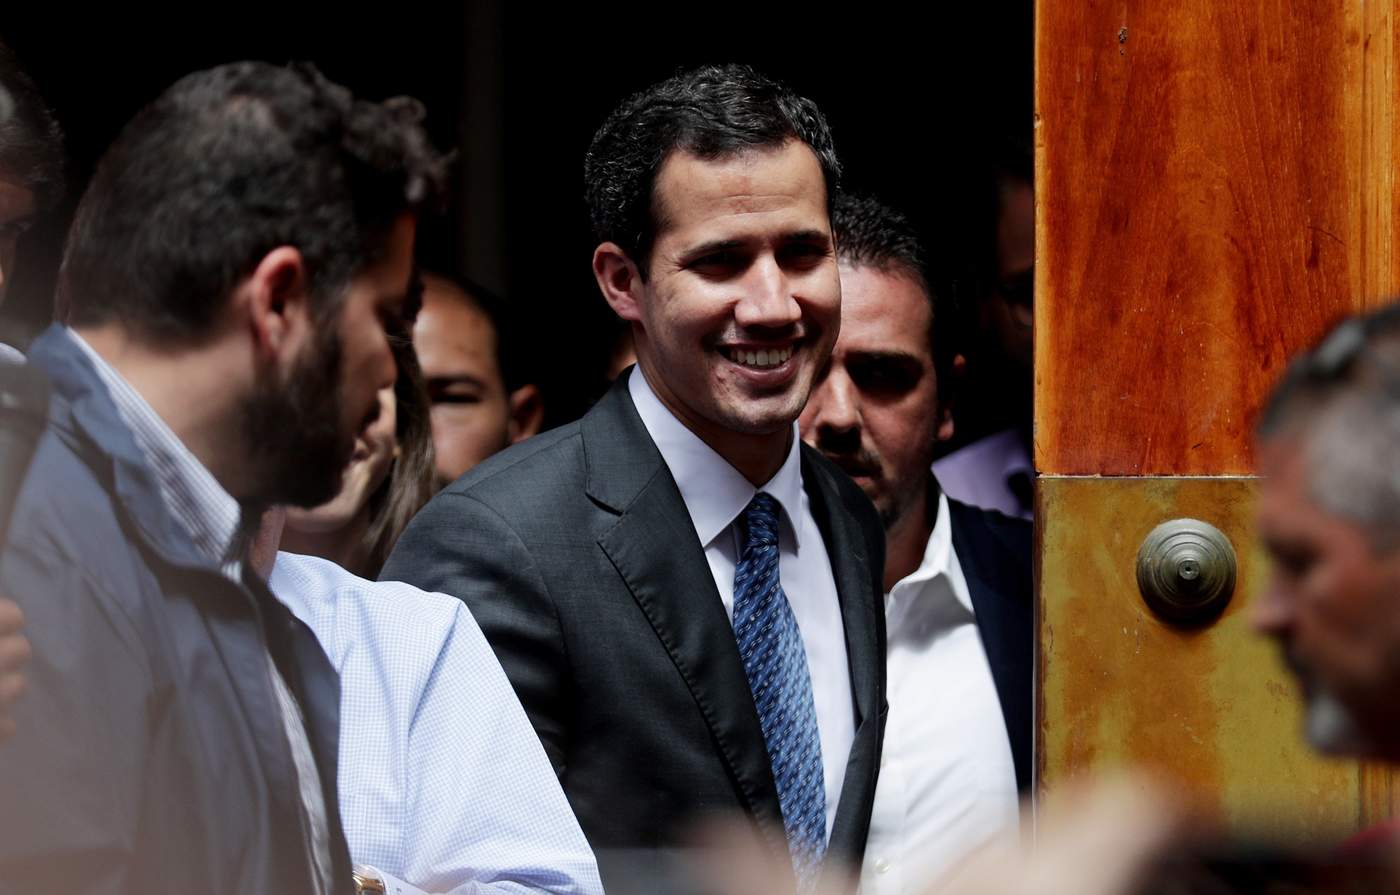 Guaidó elevó la tensión política en Venezuela -un país aquejado por una acuciante crisis económica- al adjudicarse las competencias del Ejecutivo de manera interina ante la 'usurpación' que aseguran los opositores hace Maduro de la Presidencia. (ARCHIVO)